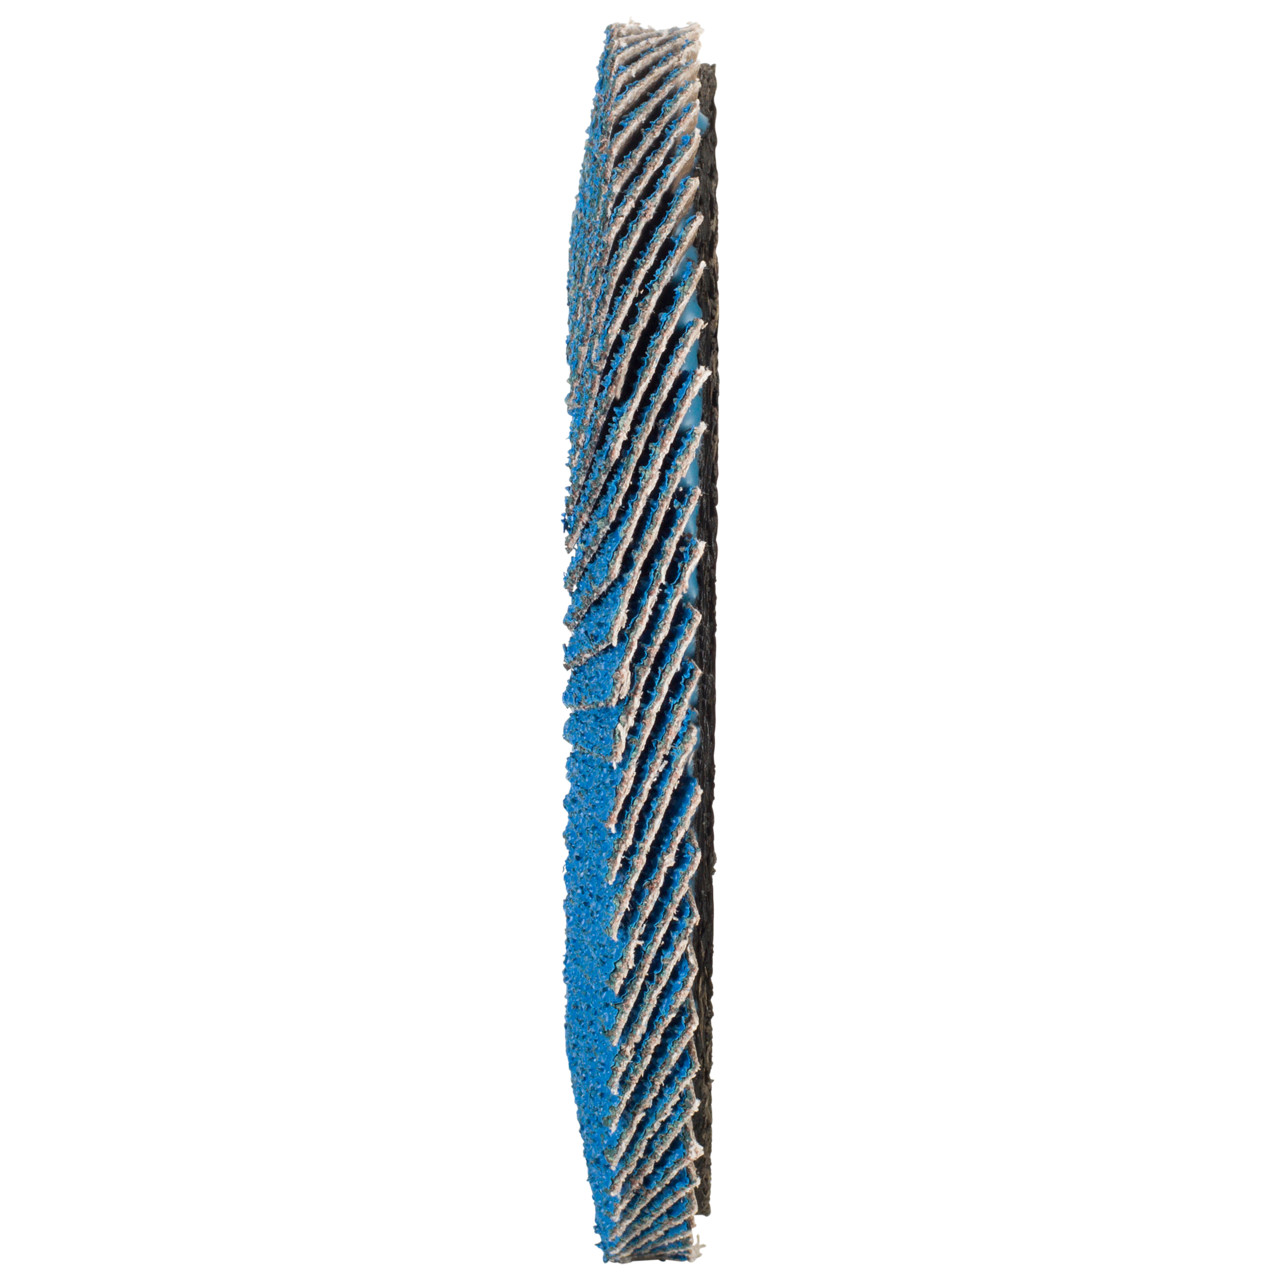 Tyrolit Rondella dentata DxH 125x22.2 FASTCUT per acciaio e acciaio inox, P80, forma: 27A - versione offset (versione con corpo portante in fibra di vetro), Art. 160244